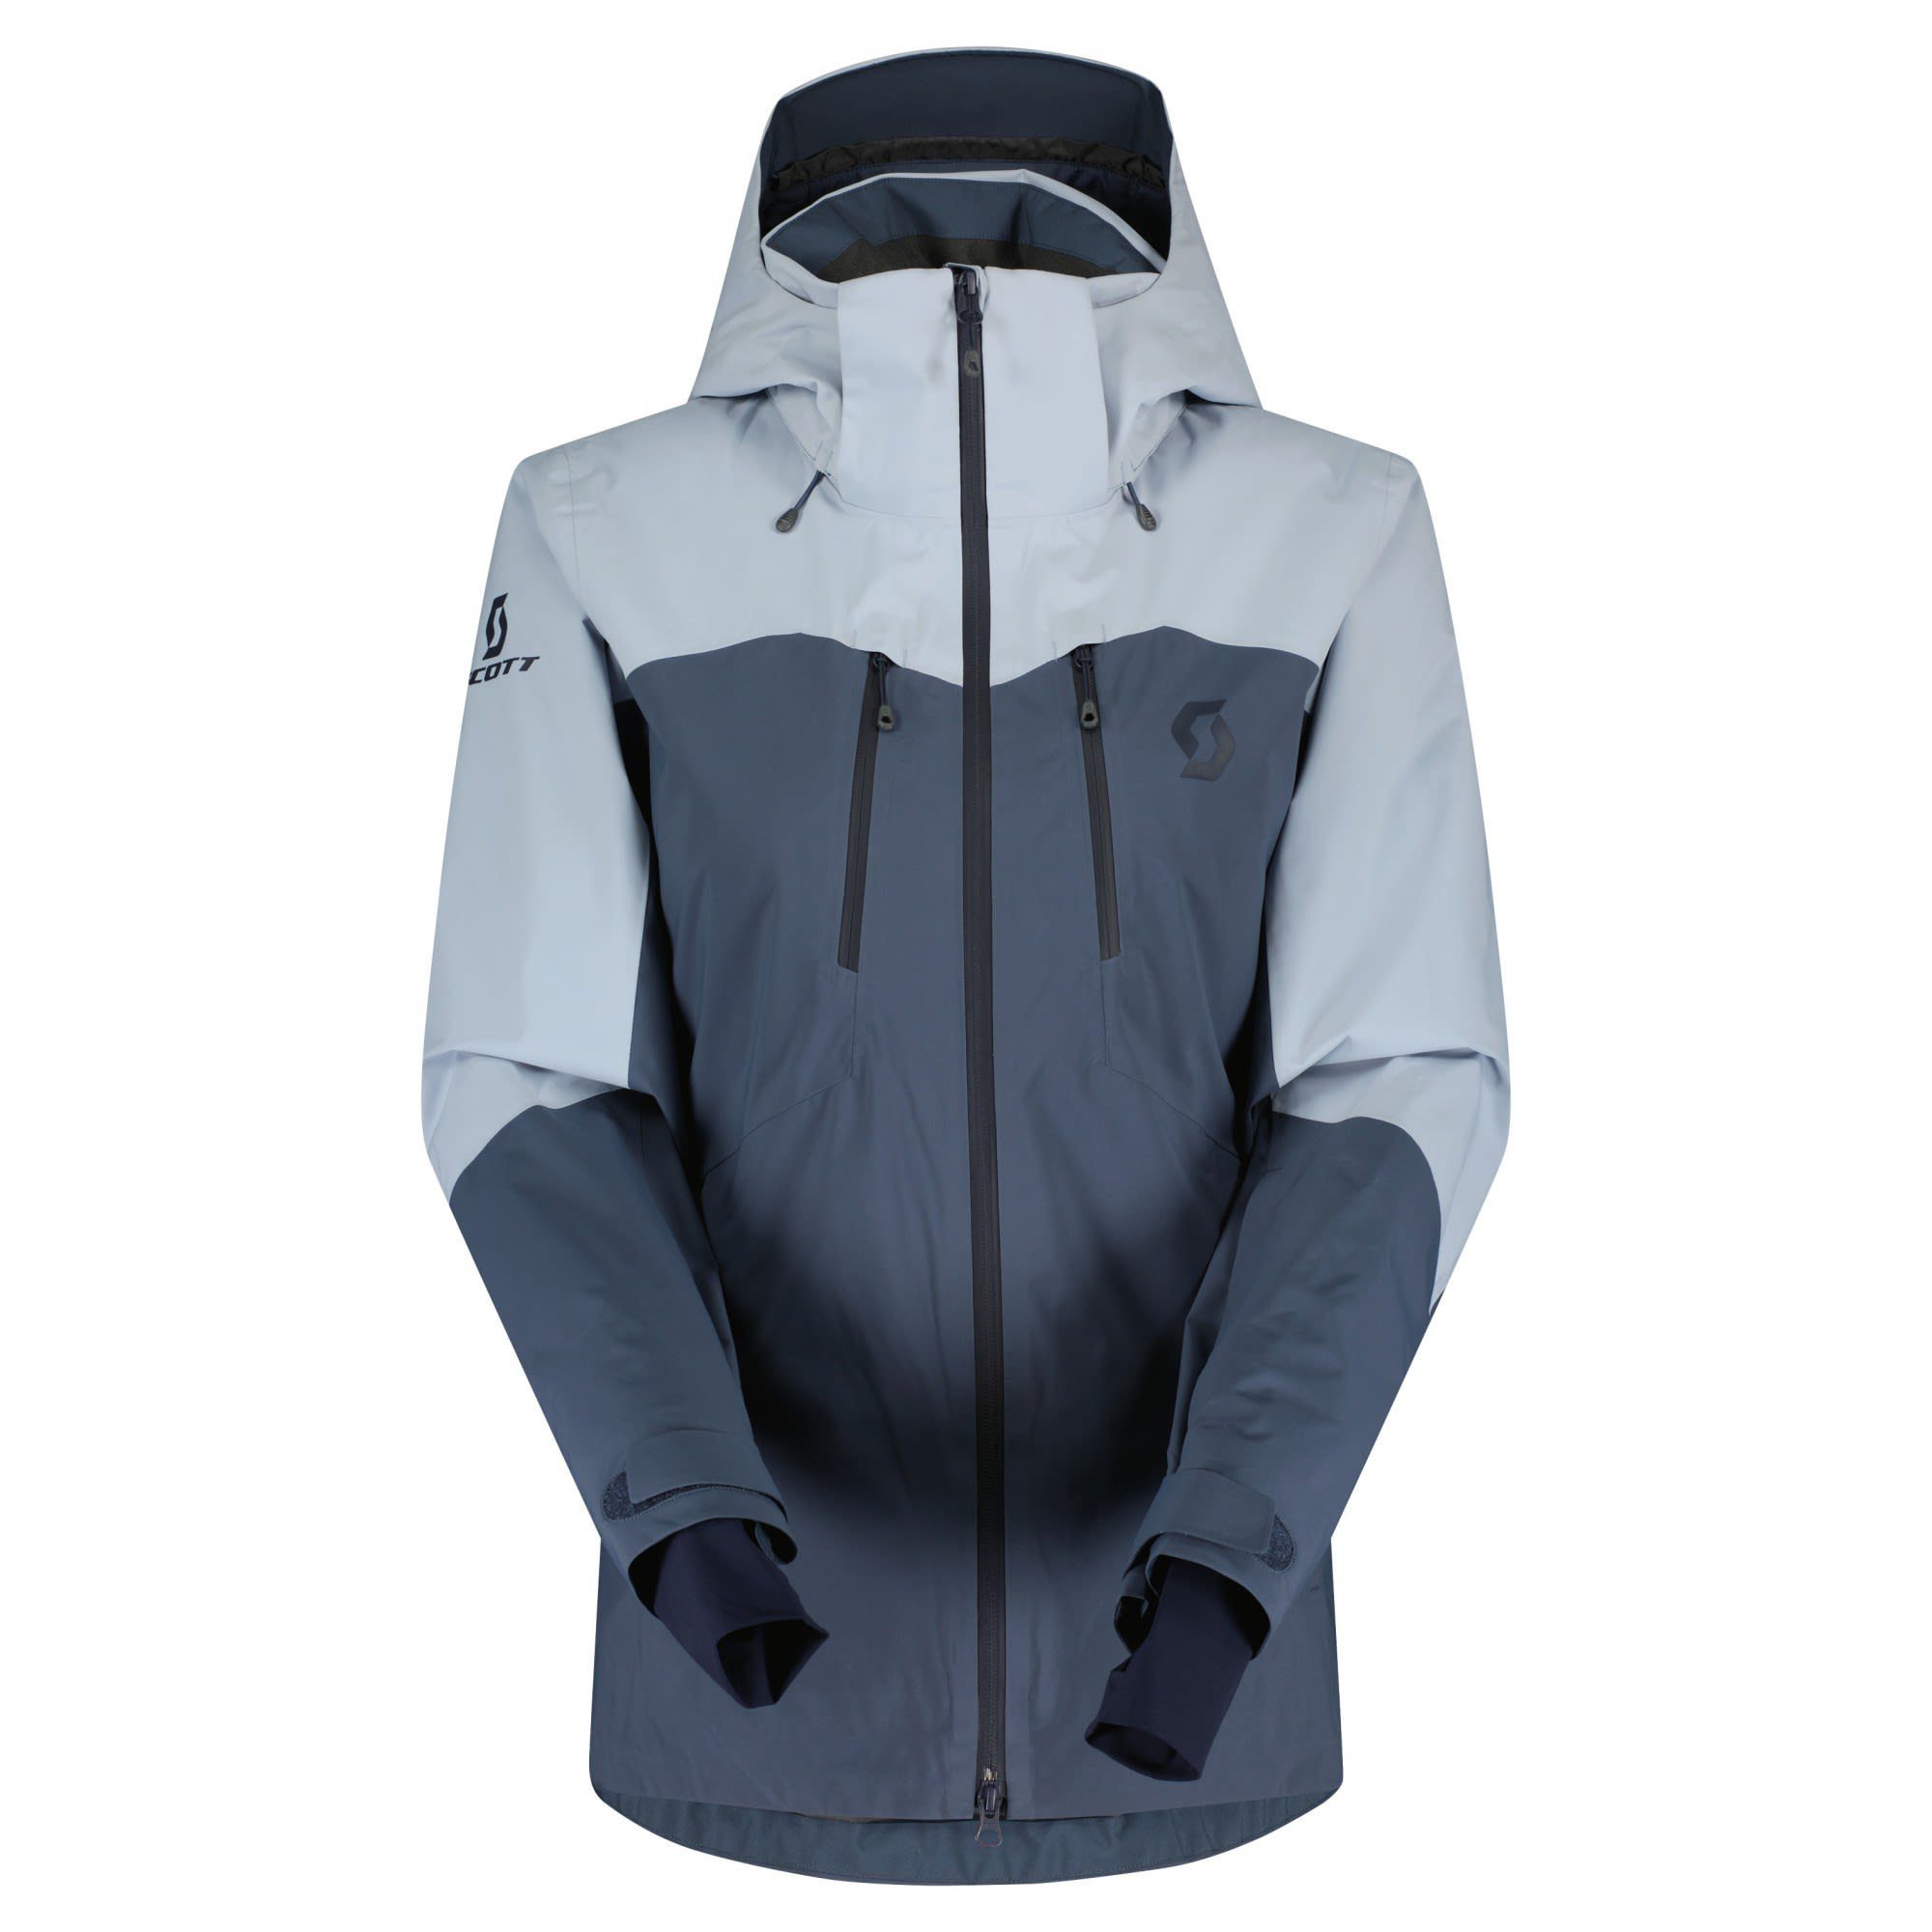 Glace & Damen Drx Metal Scott Blue Ultimate Jacket - Winterjacke Scott W Ski- Blue